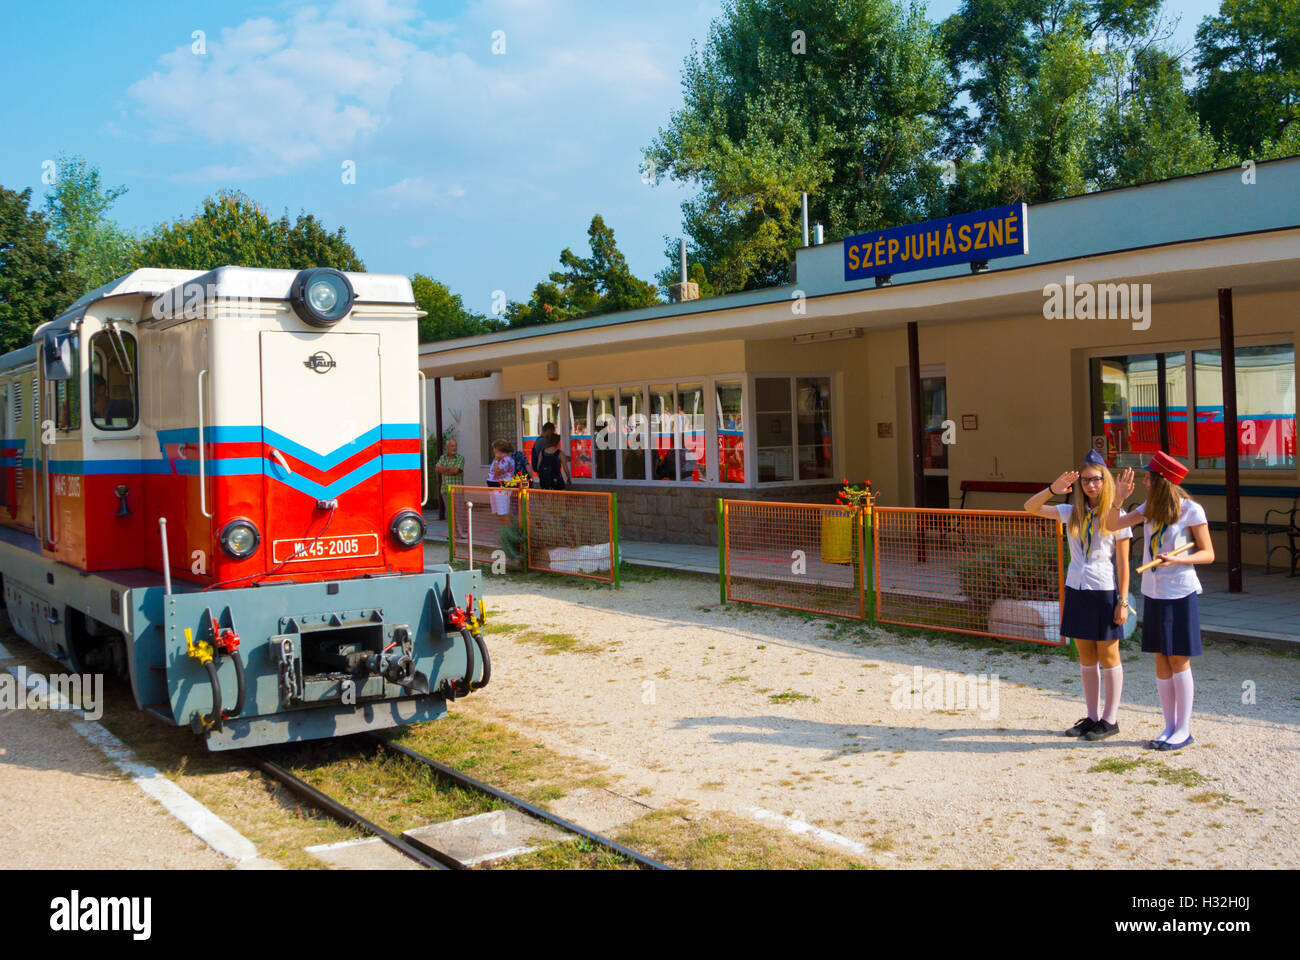 Gyermekvasut, Children's railway, Buda, Budapest, Hungary, Europe Stock Photo